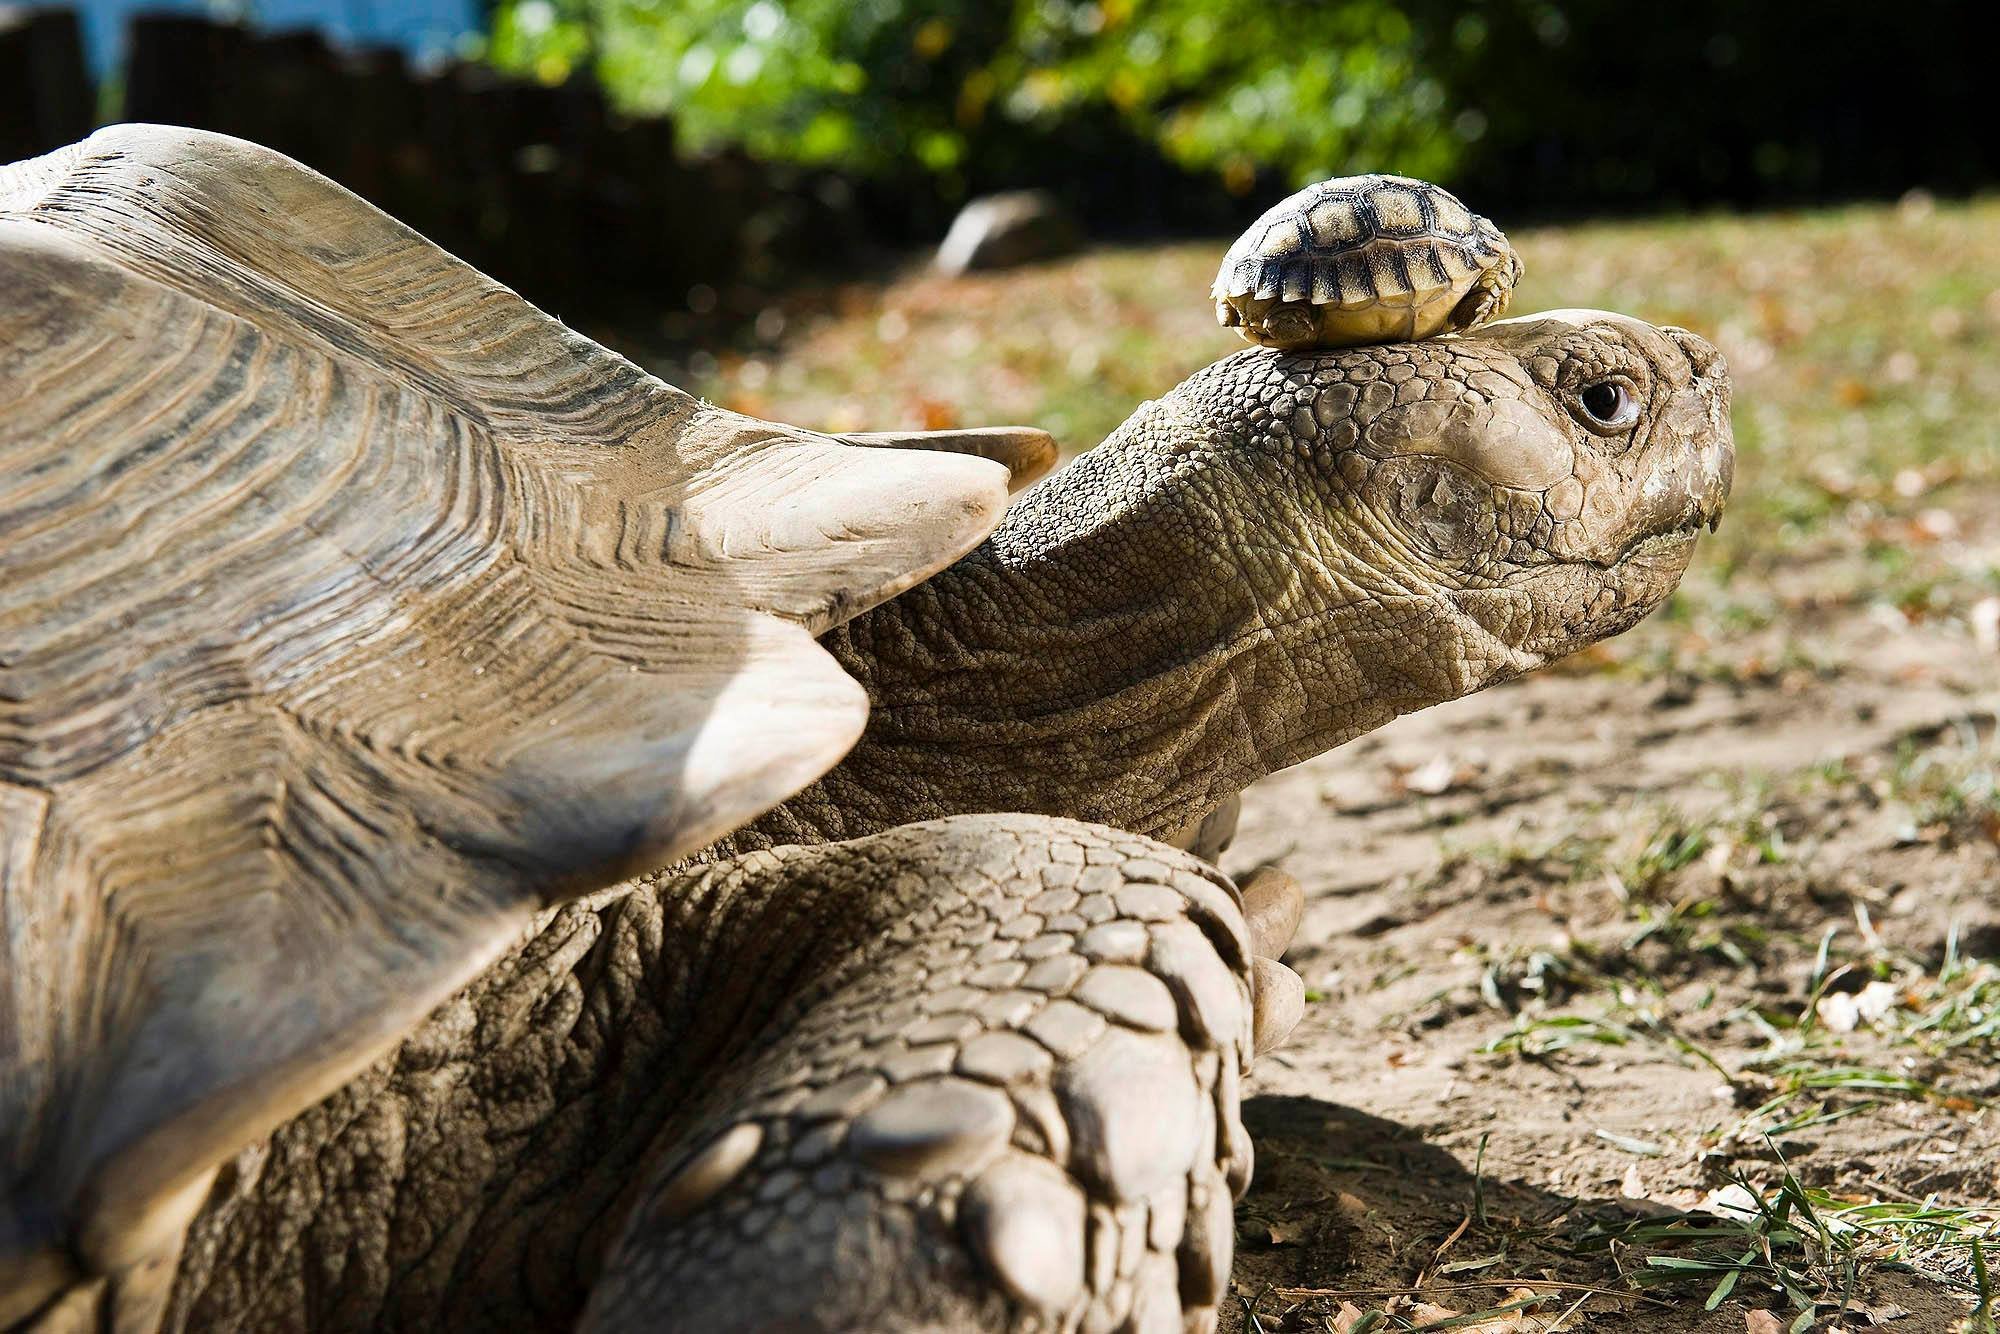 Η γηραιότερη χελώνα στον κόσμο έκλεισε τα 190 και το γιορτάζουν με τριήμερο πάρτι